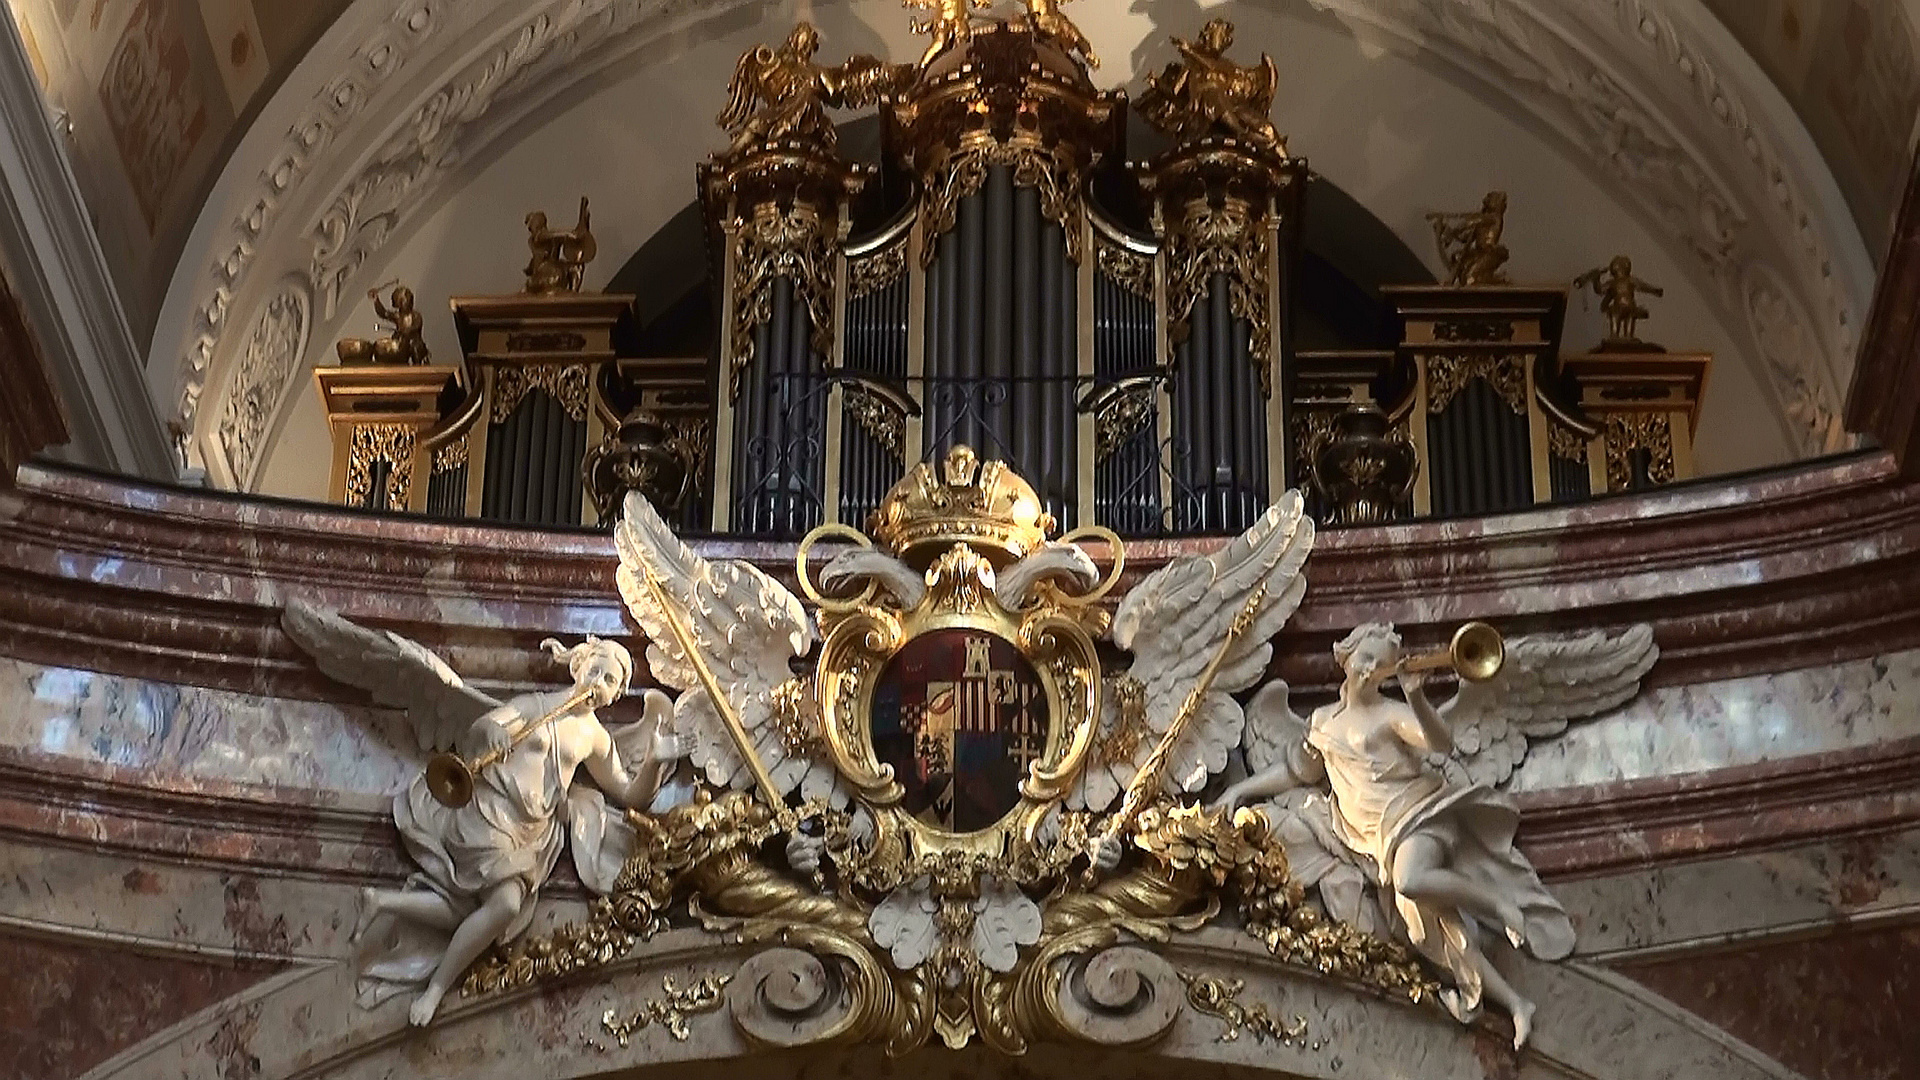 Orgel in der Karlskirche Wien